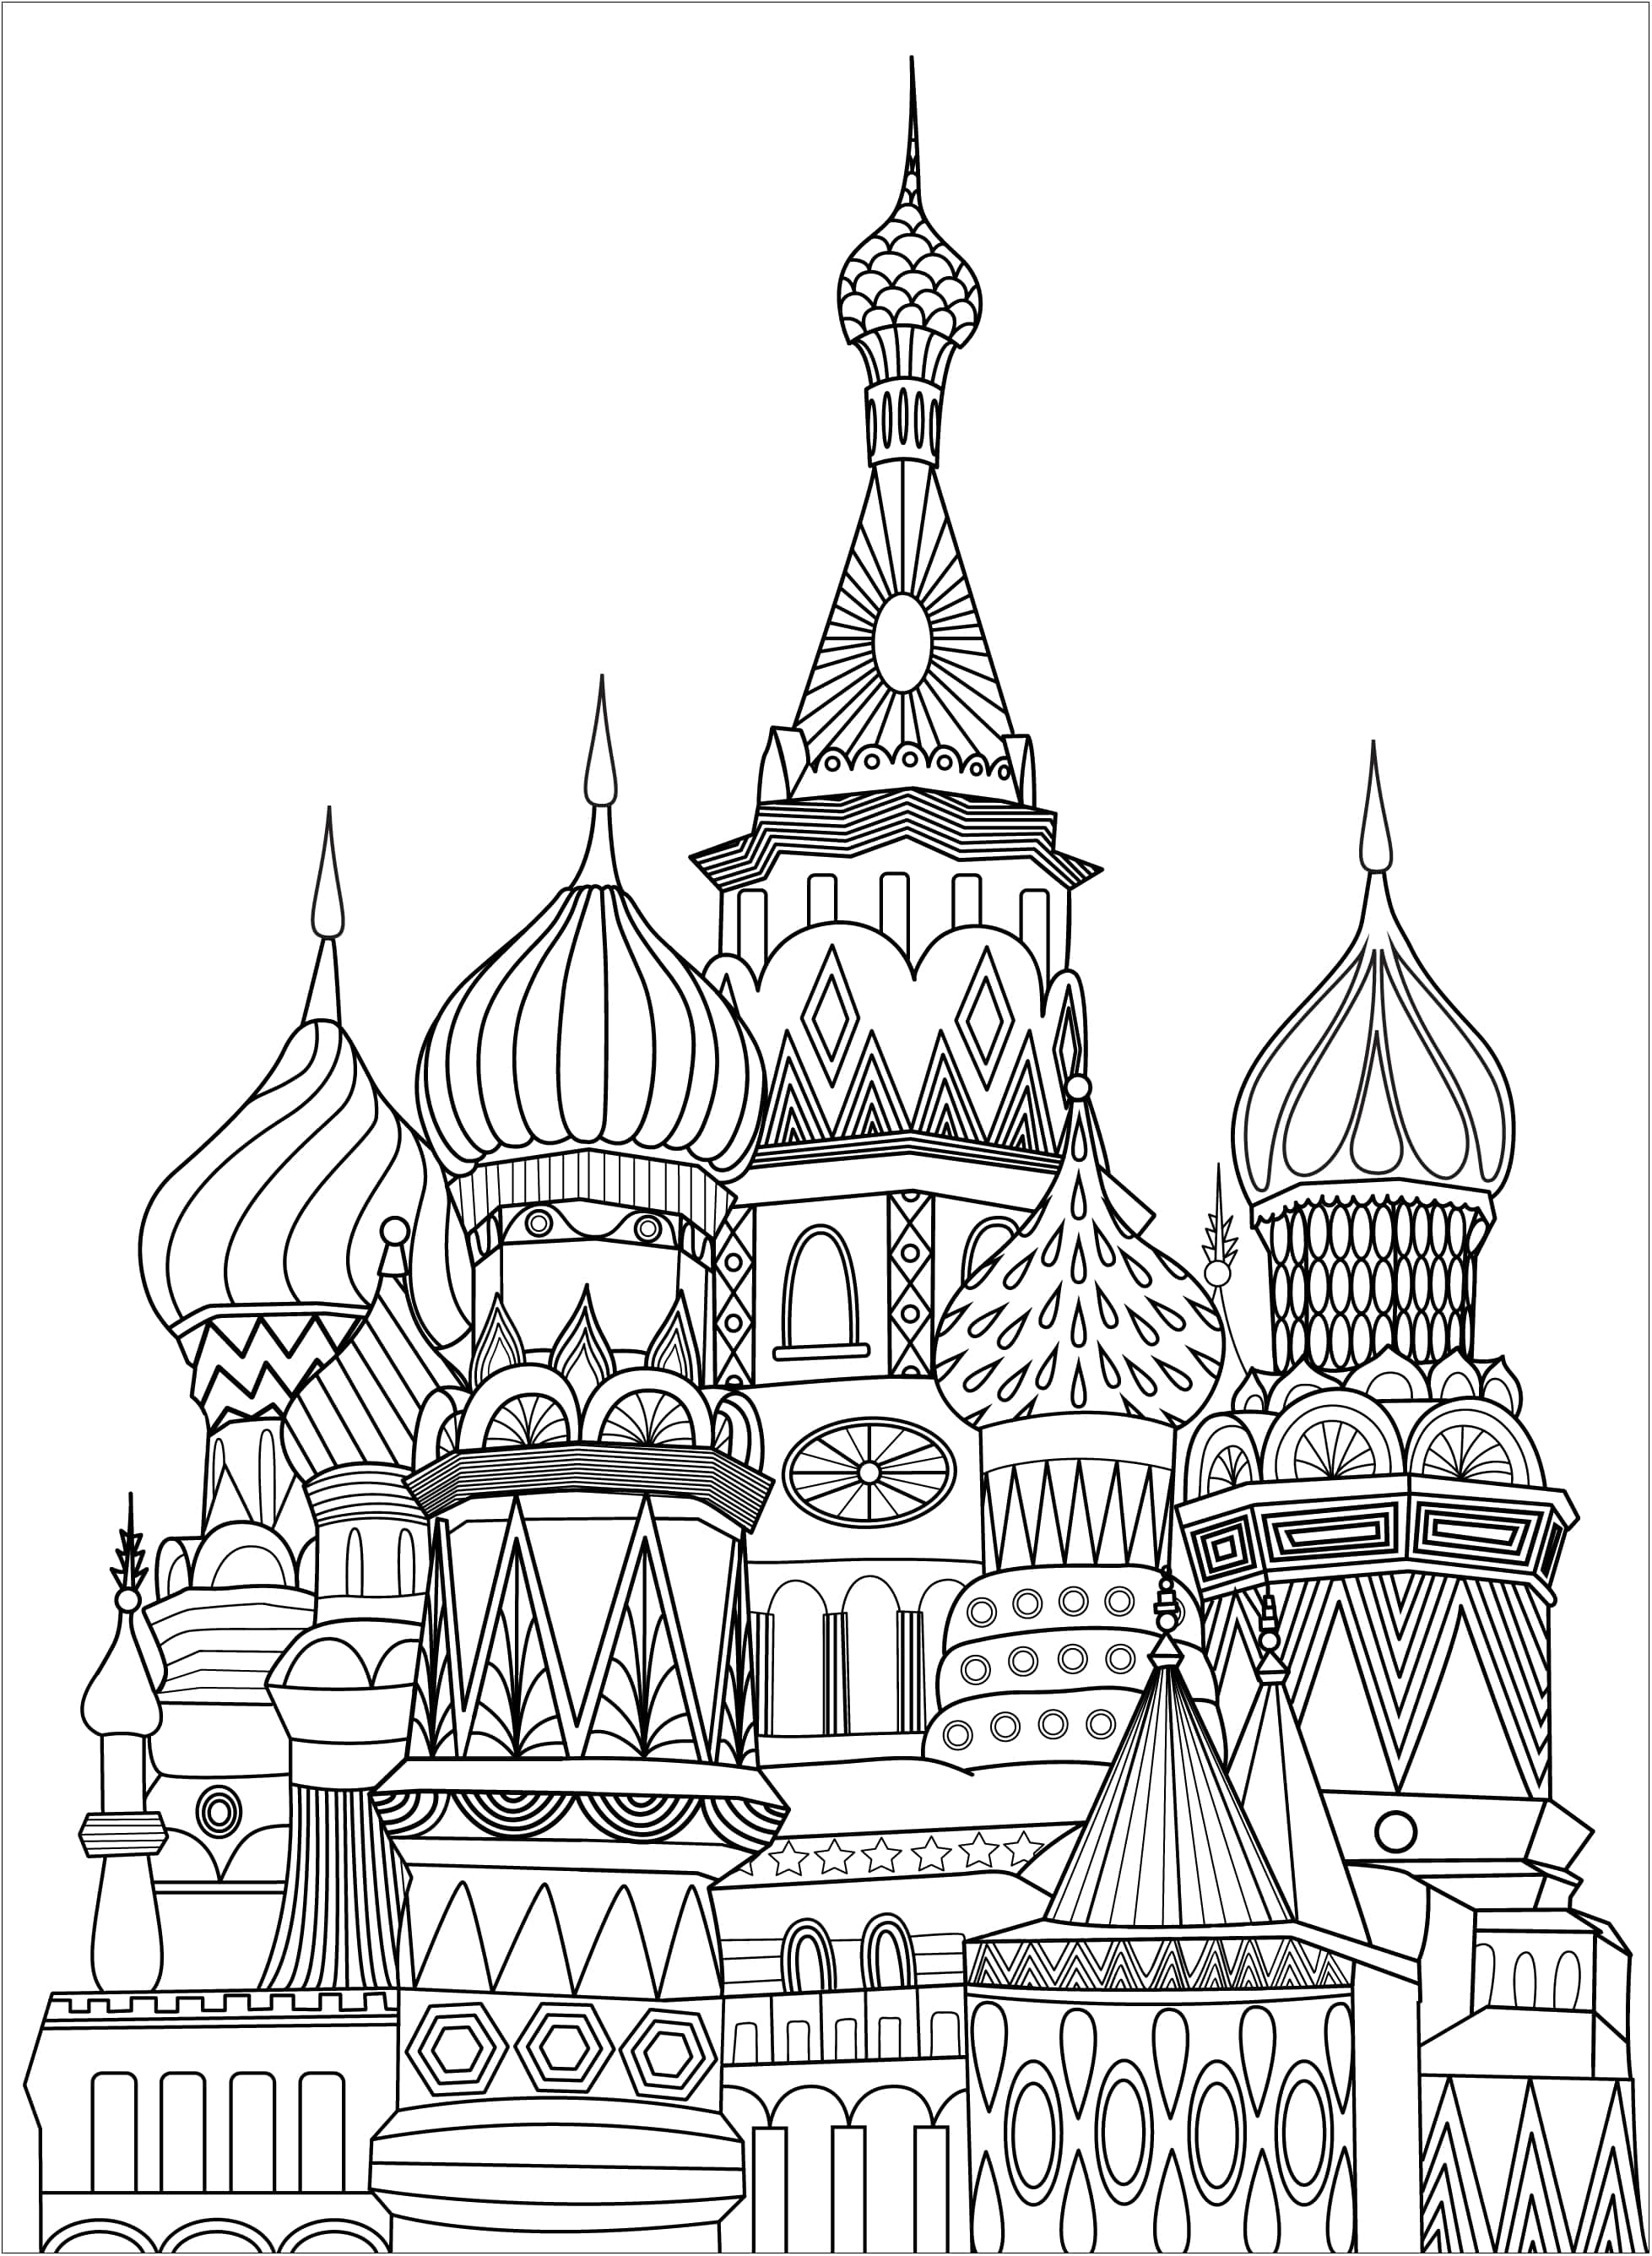 Desenho de colorir único representando a Praça Vermelha em Moscovo. A Praça Vermelha é uma praça aberta em Moscovo, adjacente à fortaleza histórica e ao centro do governo conhecido como Kremlin, Artista : Elodie